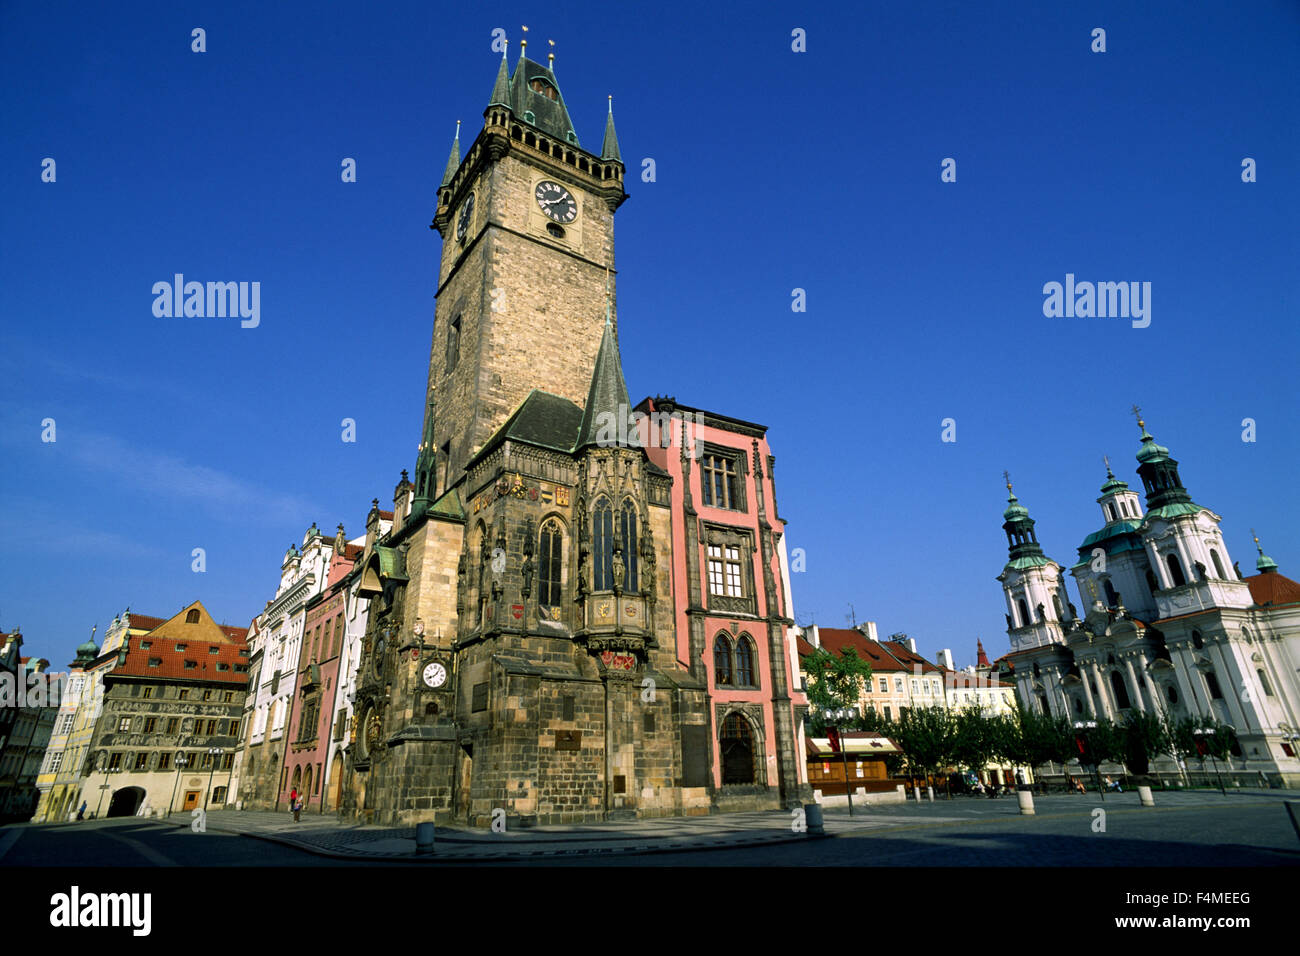 Tschechische Republik, Prag, Staromestske Namesti, altes Rathaus, Uhrenturm und Nikolaikirche Stockfoto